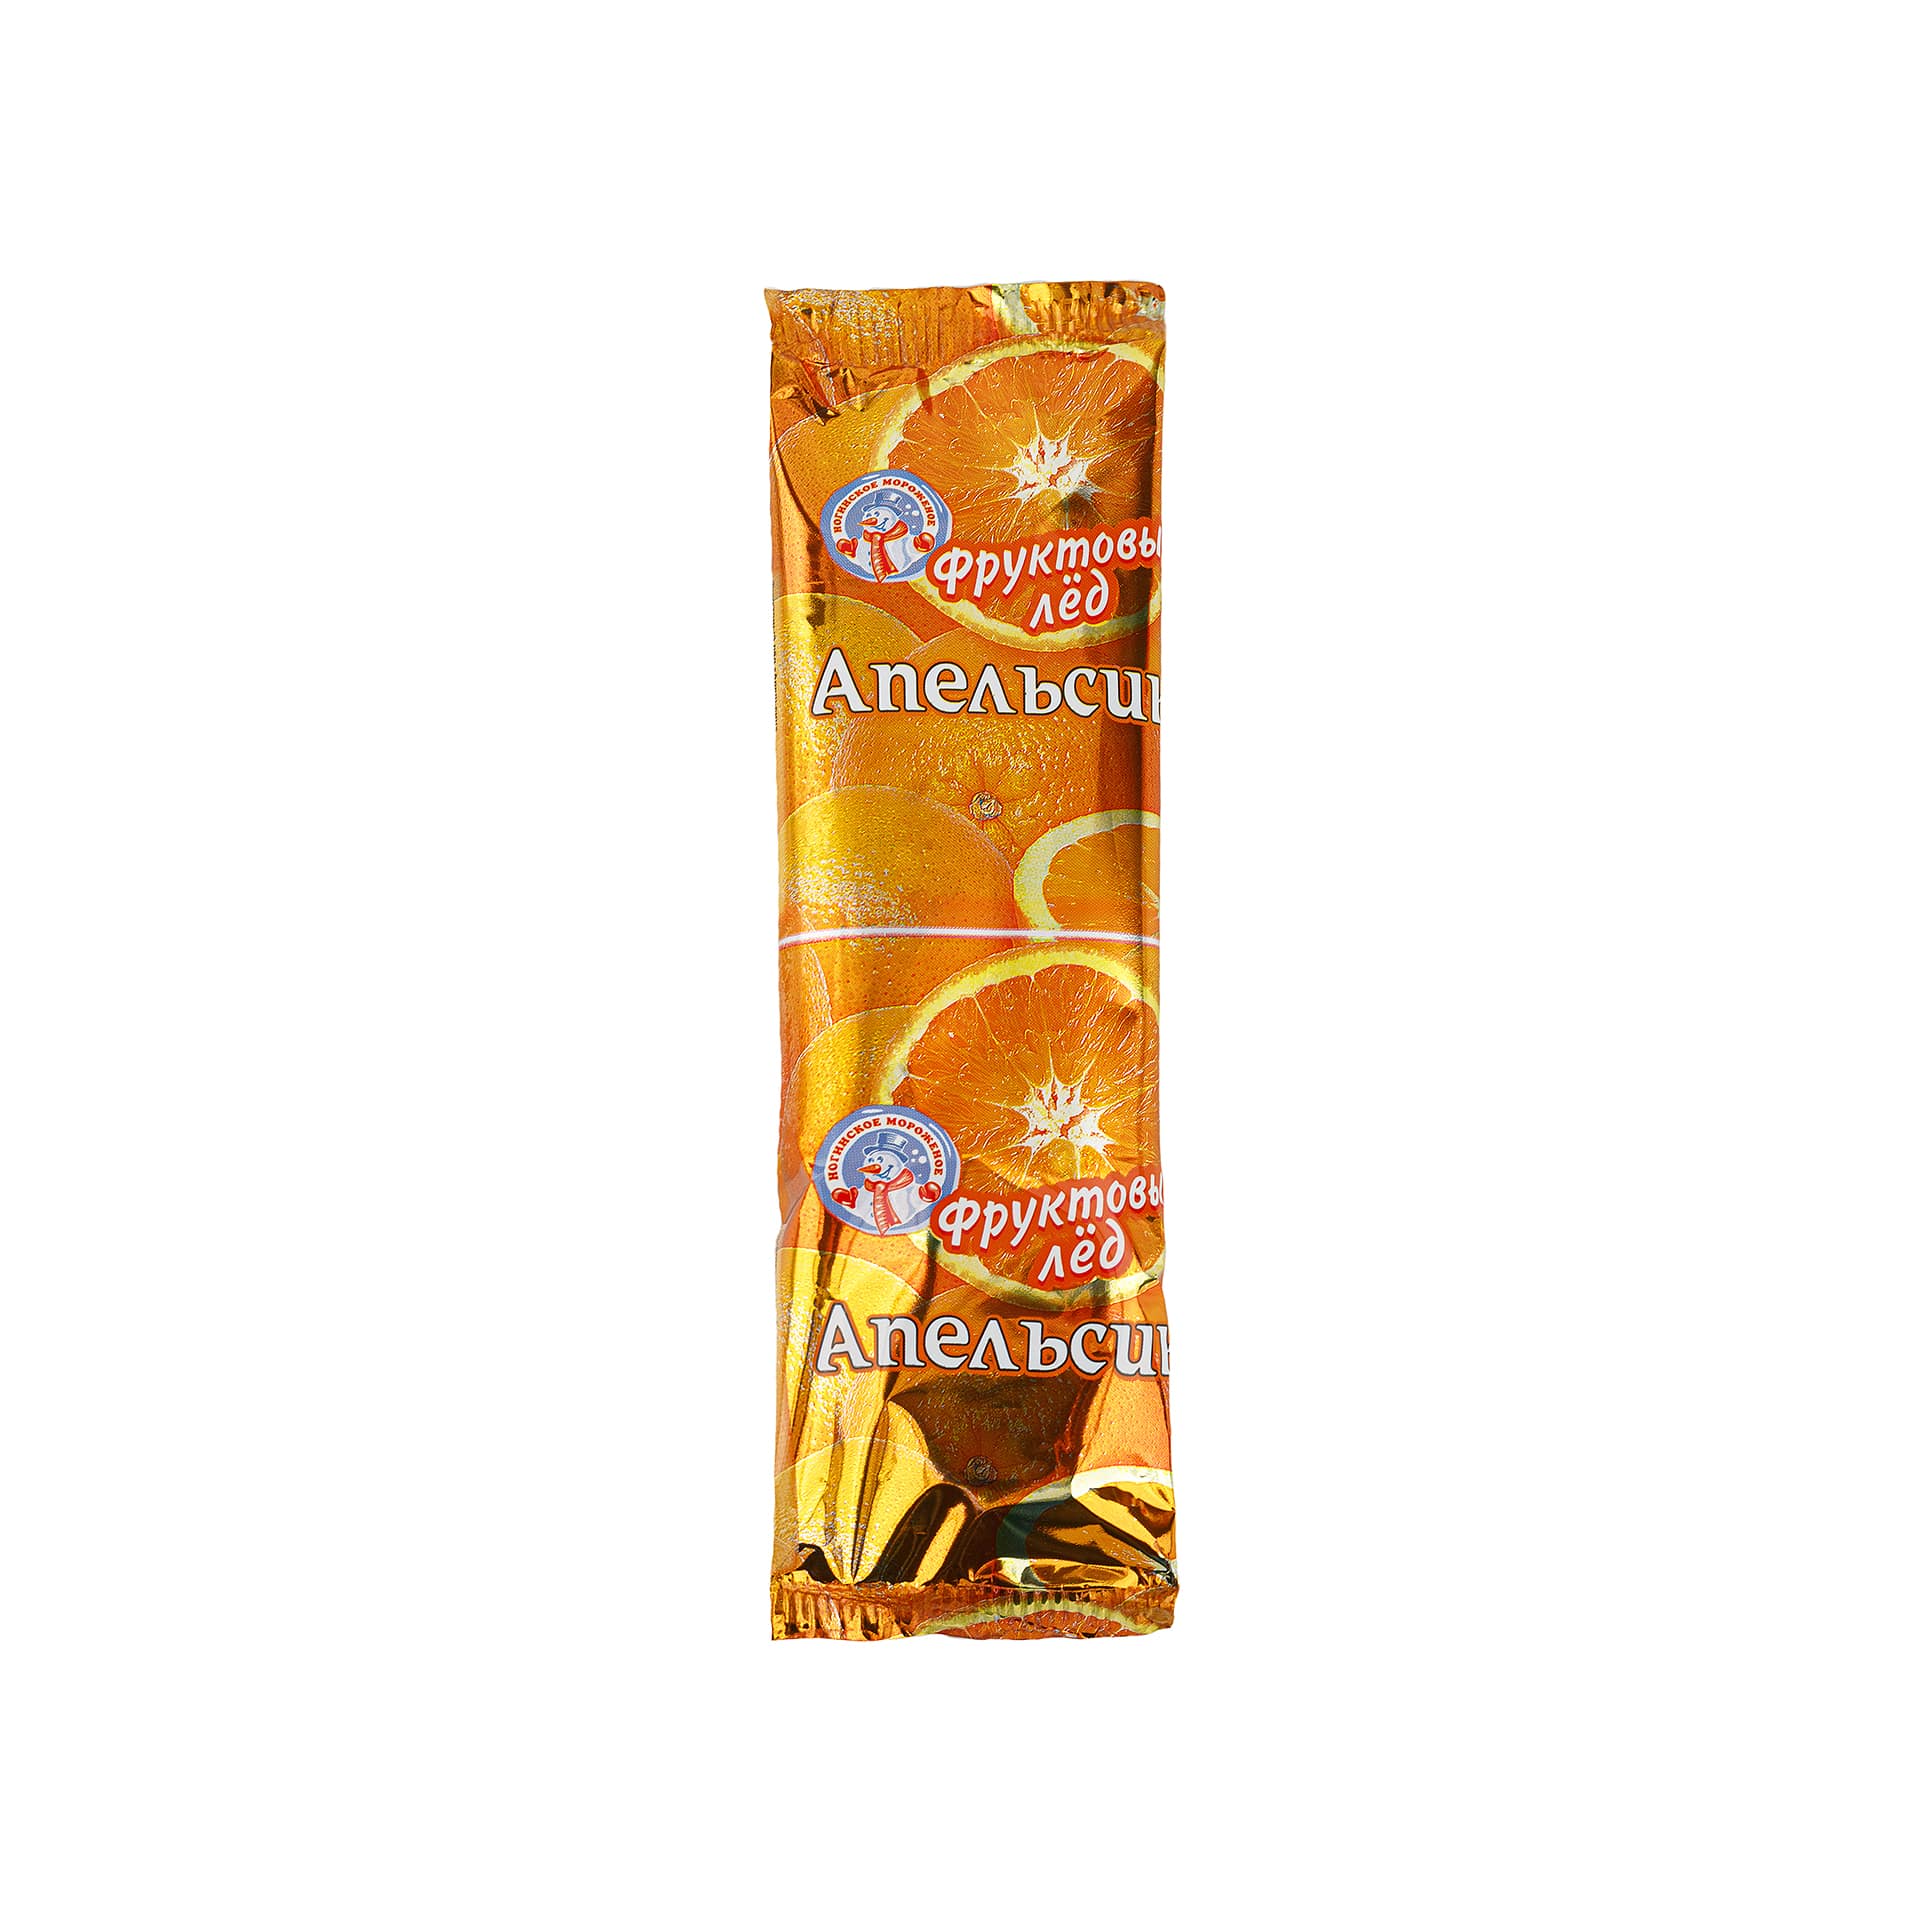 Фруктовый лед с апельсином "Апельсин" Ногинское мороженое 90 г 2671LED, общий вид, купить оптом с доставкой по москве и московской области, недорого, низкая цена